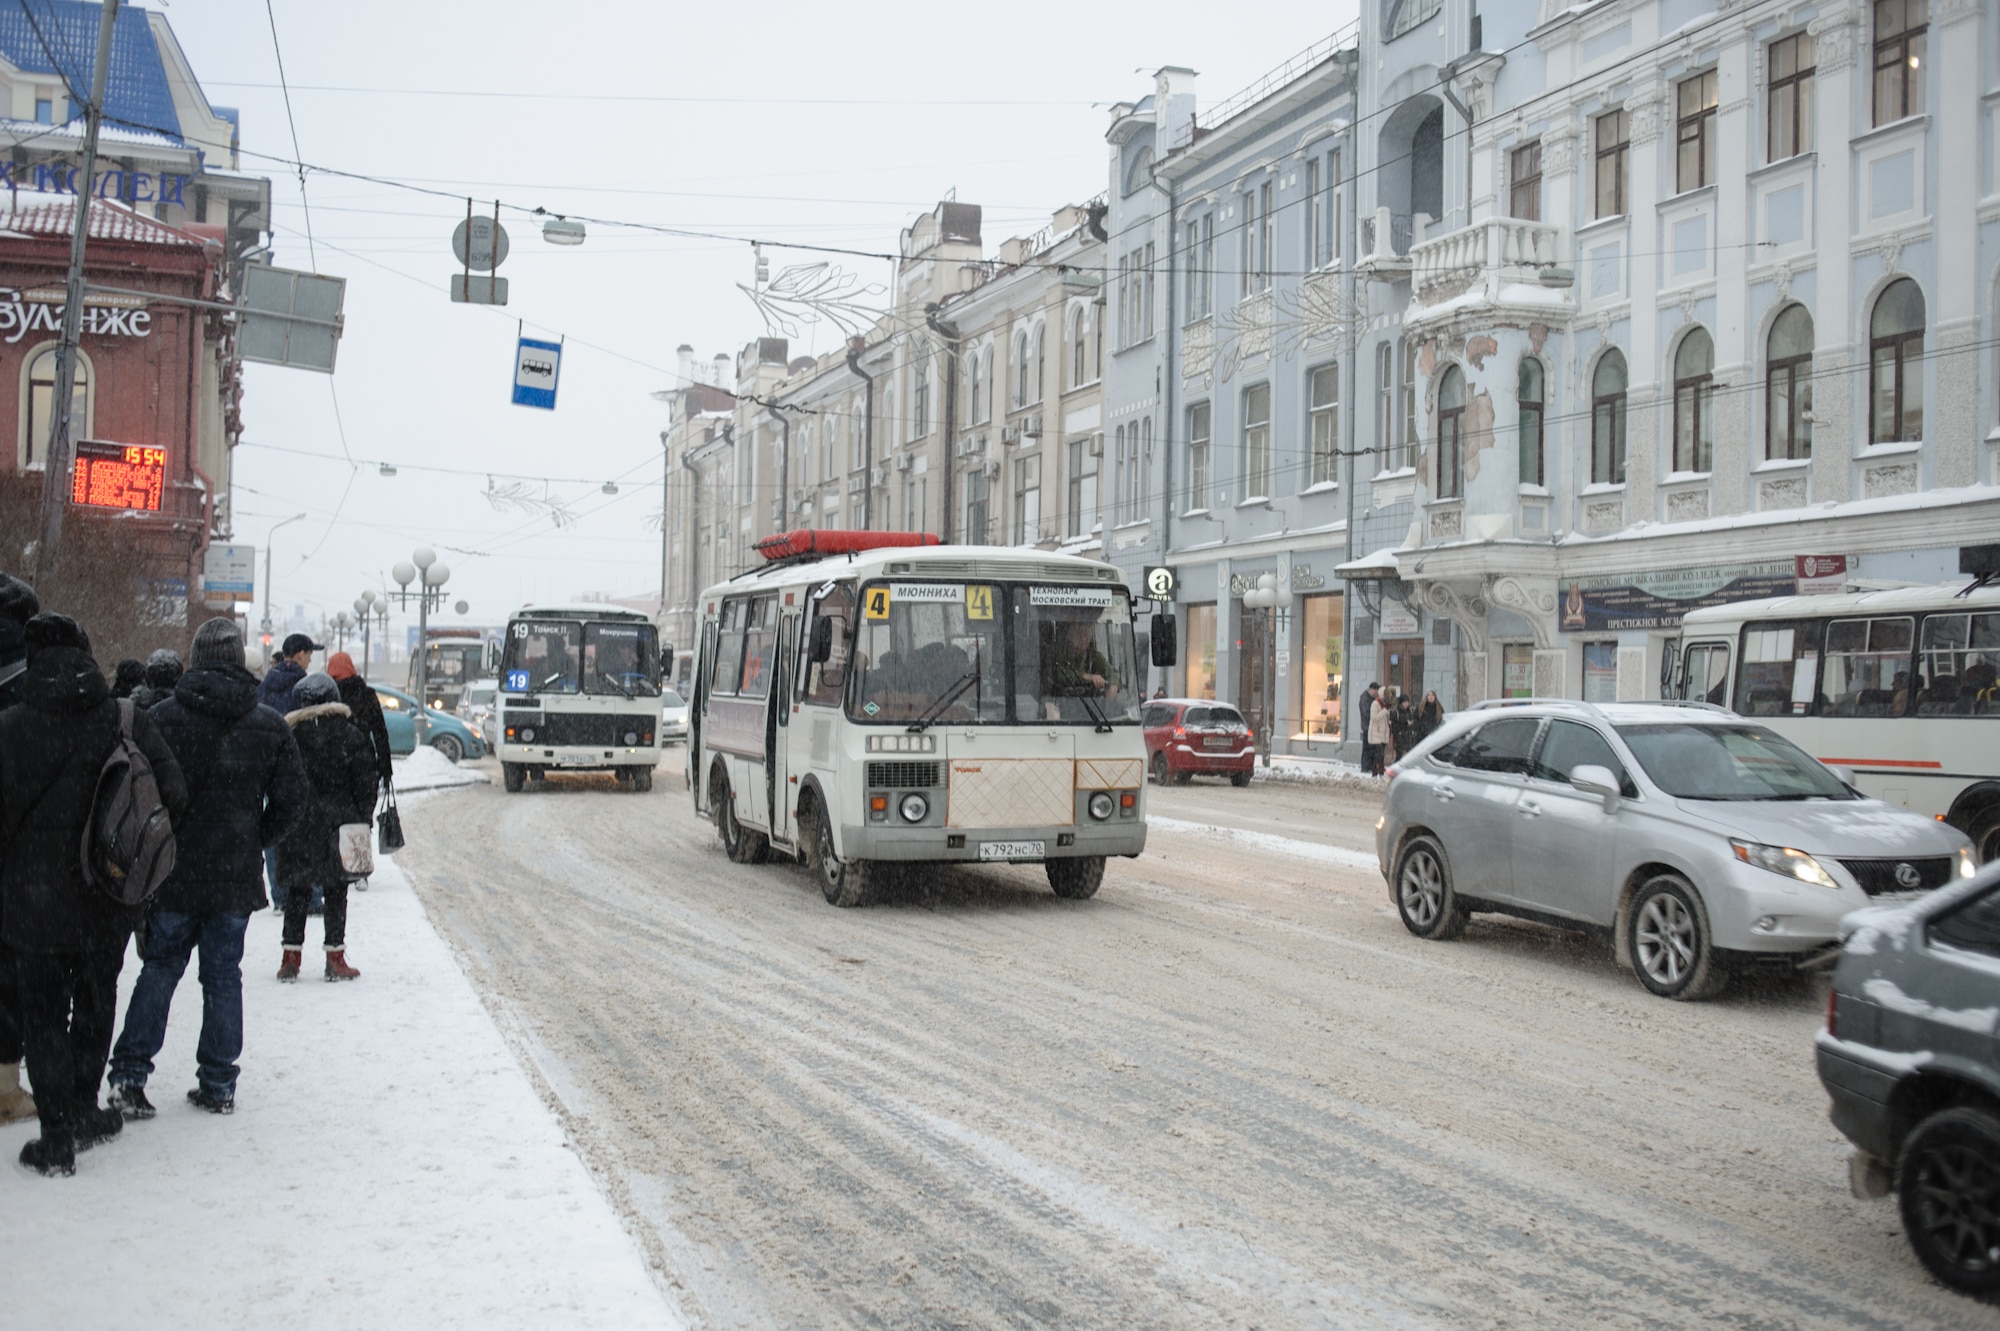 Работа, Томские новости, Работа дорога на работу Для 70% томичей зима стала препятствием по пути на работу